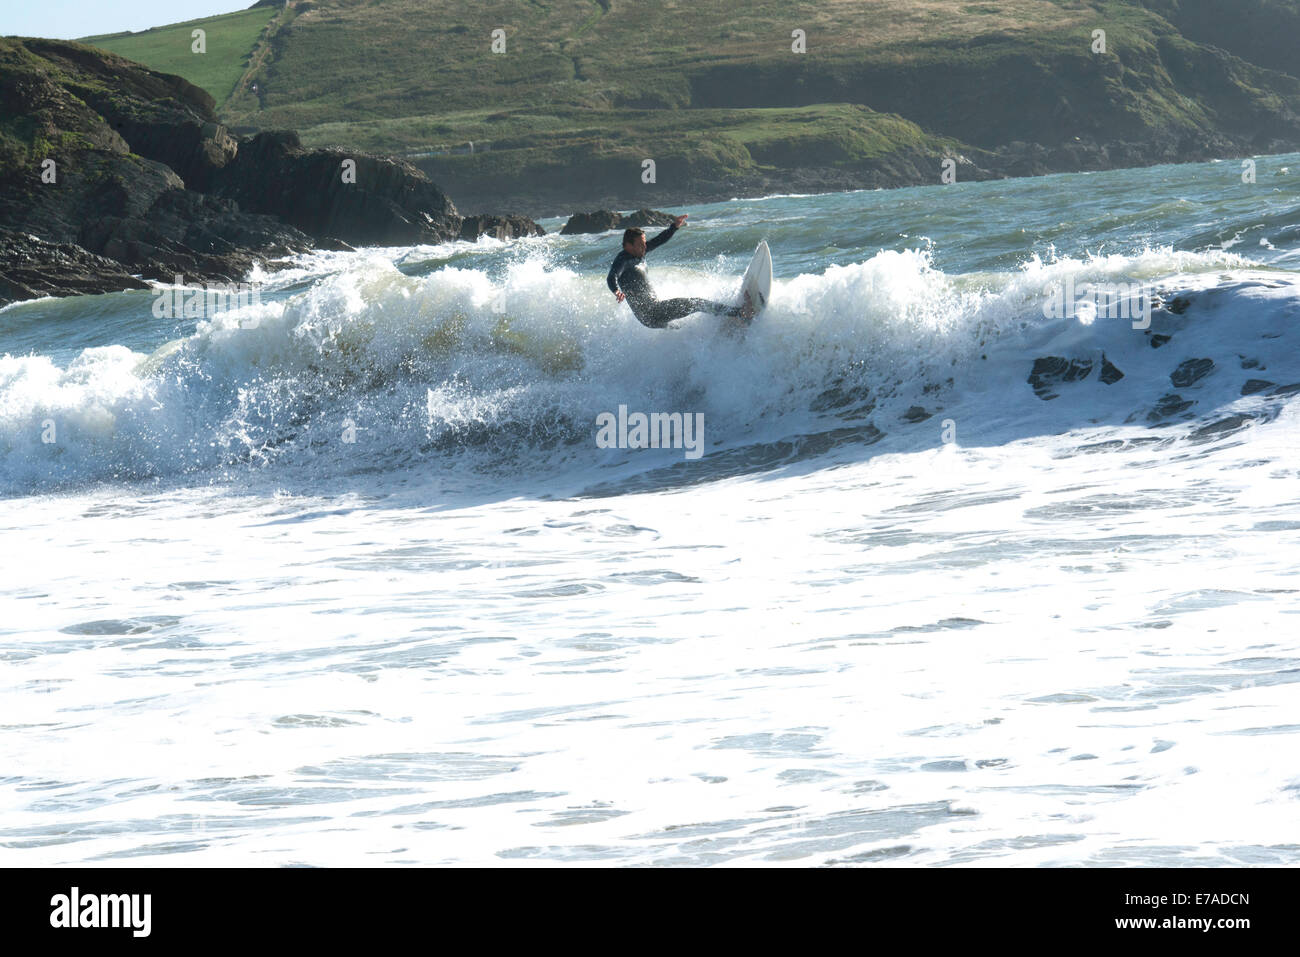 Juni 2014: Action shot der Surfer auf der Welle an der Challaborough Bay, South Devon Küste im Hintergrund Stockfoto